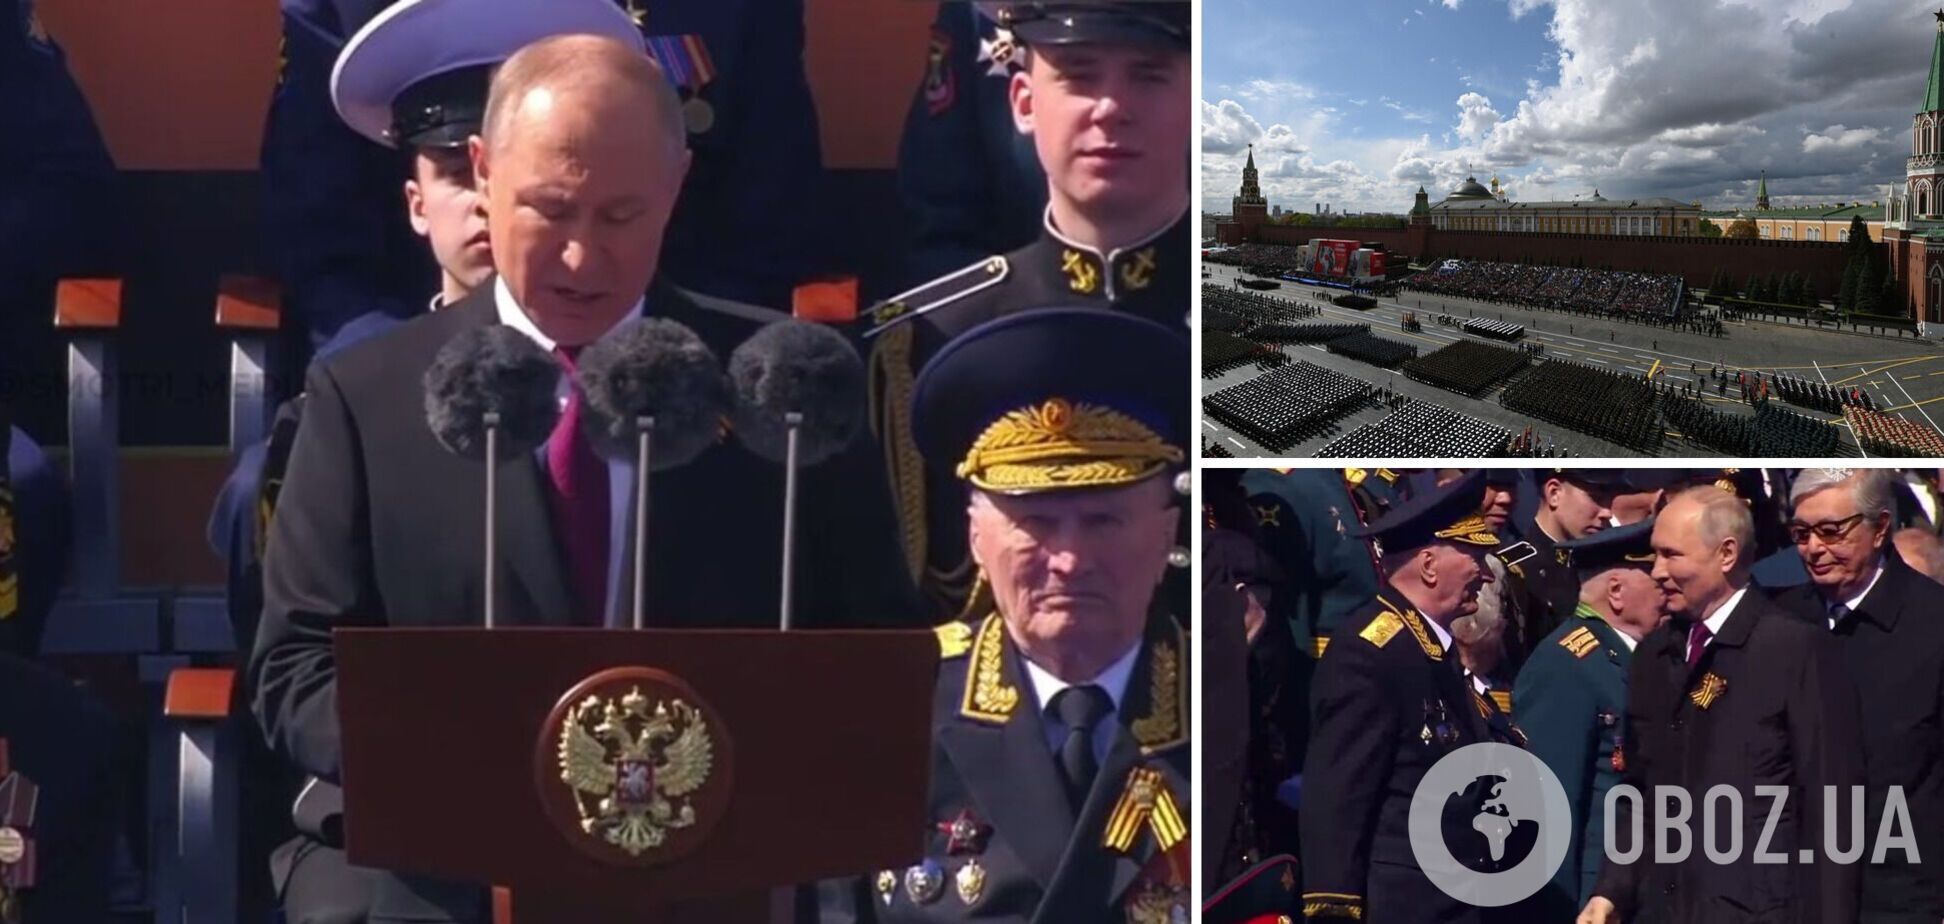 'Переломный рубеж': Путин на параде пожаловался, что против РФ начали войну, и снова заговорил о защите Донбасса